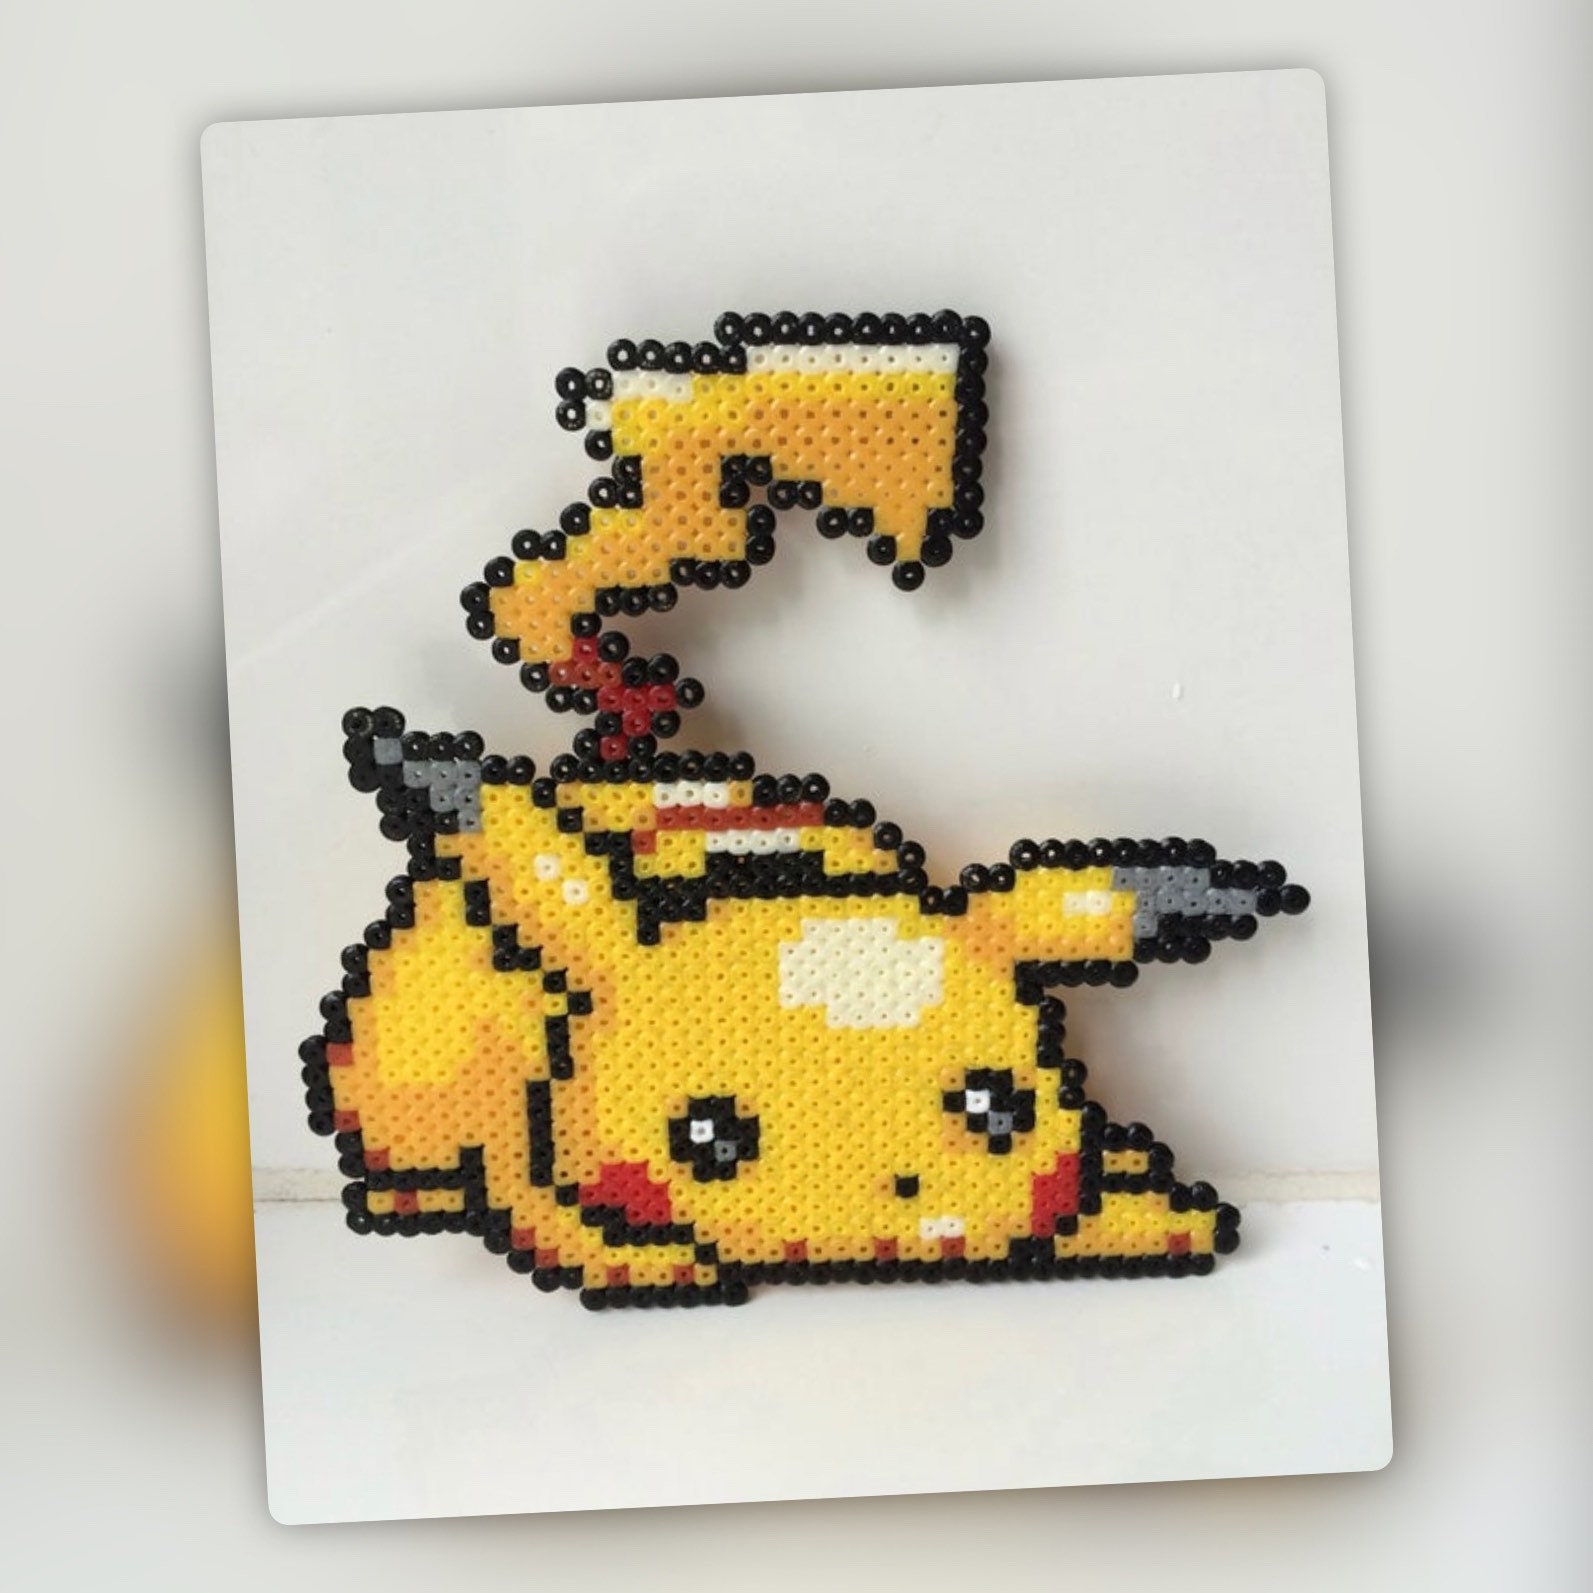 Pokémon Pikachu Fantasia Cosplay para Crianças, Filme Anime, Festa